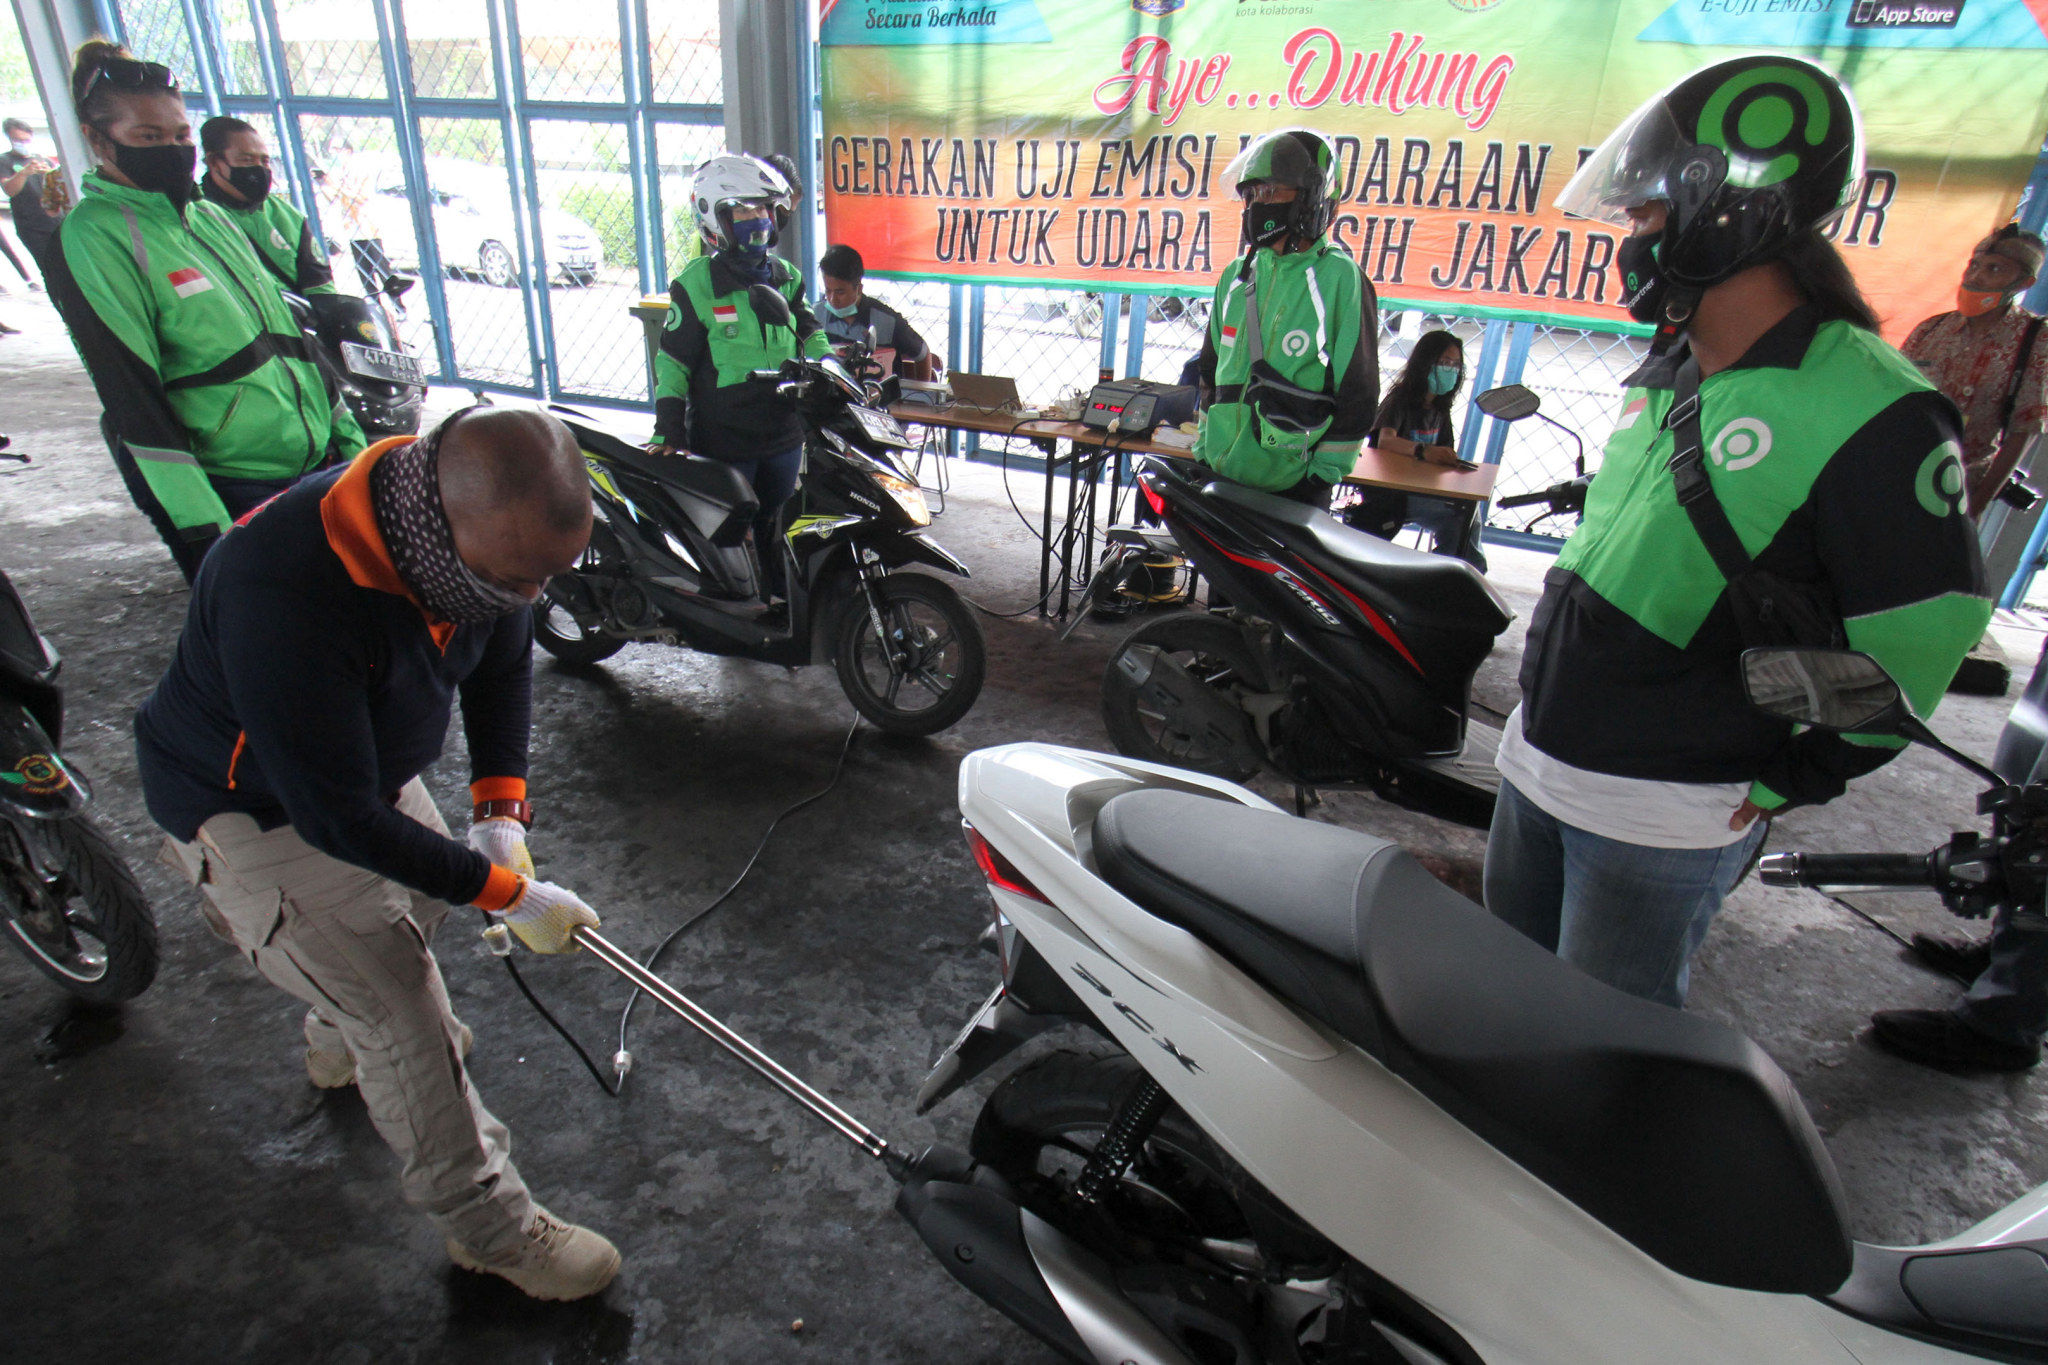 <p>Petugas melakukan uji emisi pada kendaraan mitra GoRide, di halaman kantor Dinas Lingkungan Hidup Provinsi DKI Jakarta, Kamis, 19 November 2020. Foto: Panji Asmoro/TrenAsia</p>
